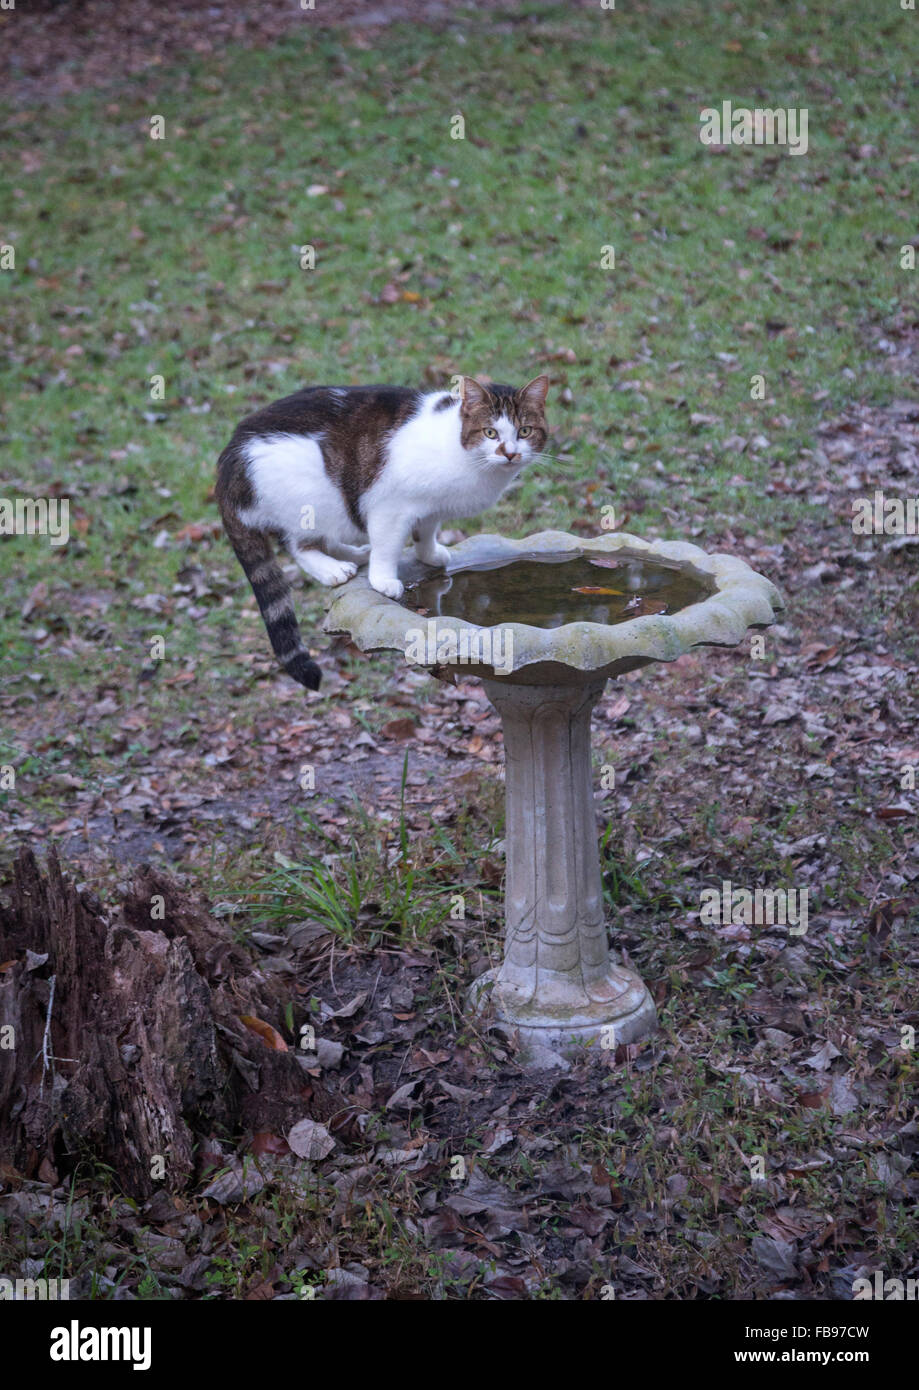 Katze steht auf Vogelbad, Wasser zu trinken bekommen. Stockfoto